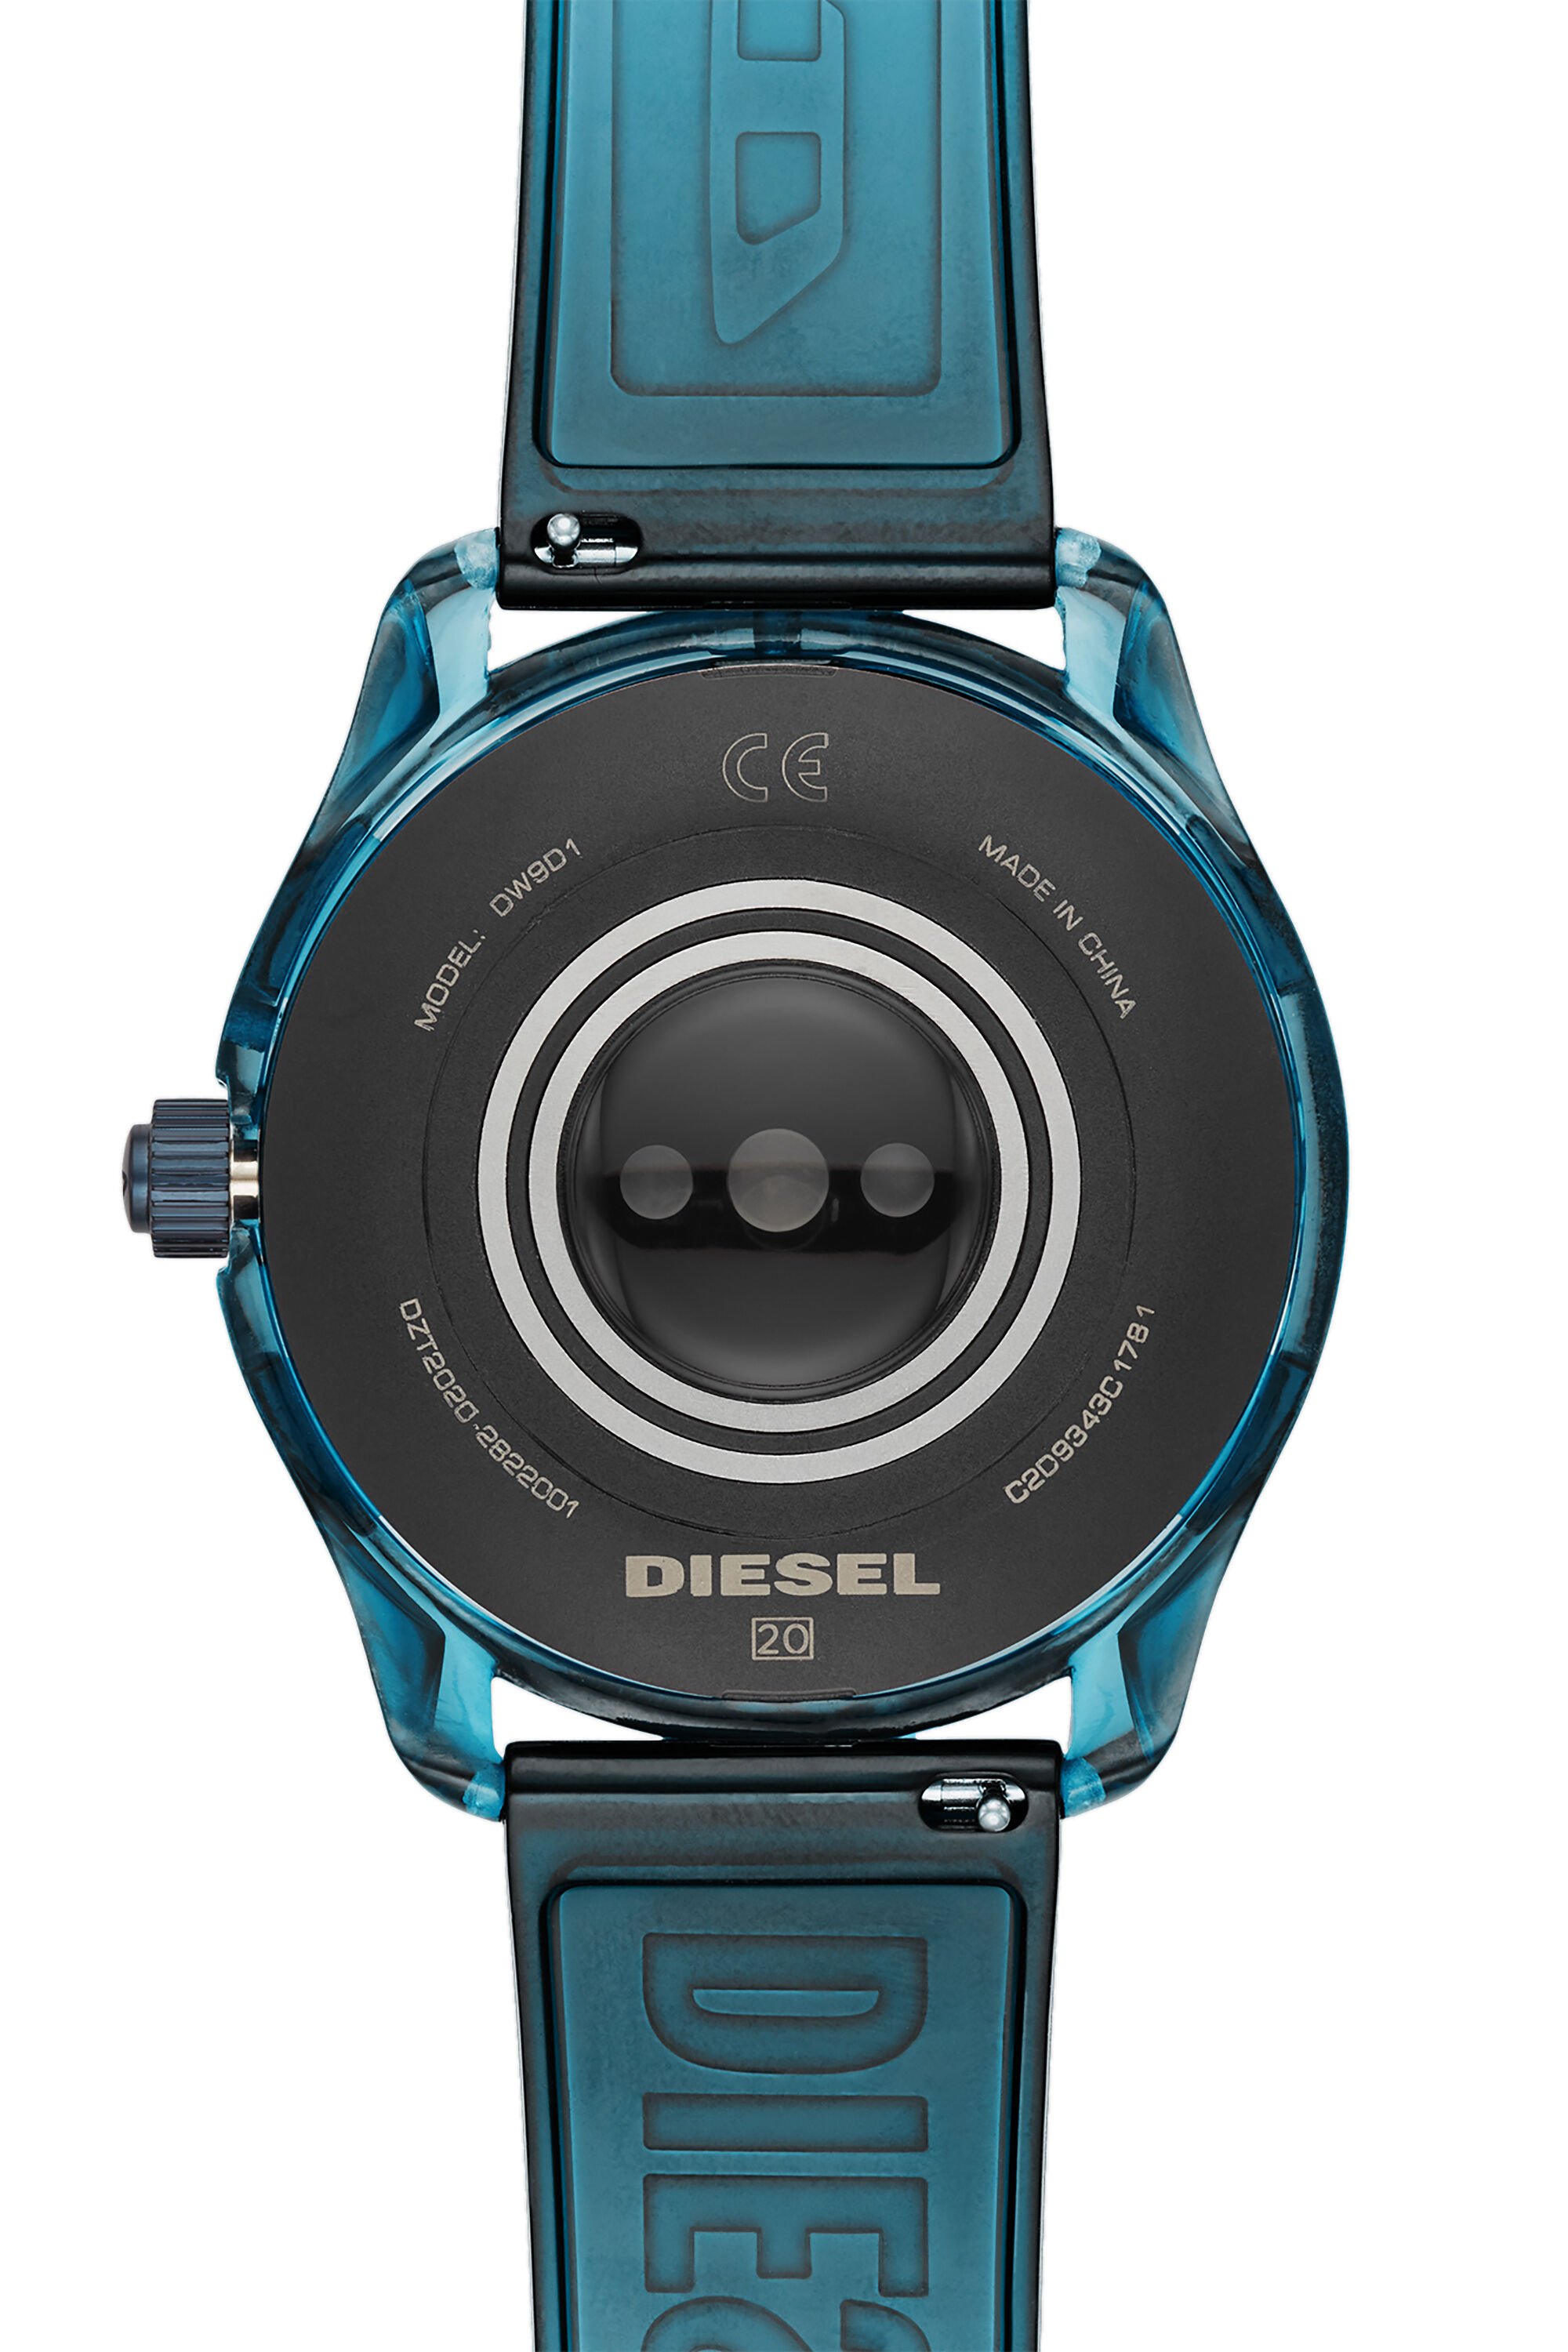 Diesel - DT2020, Bleu - Image 4